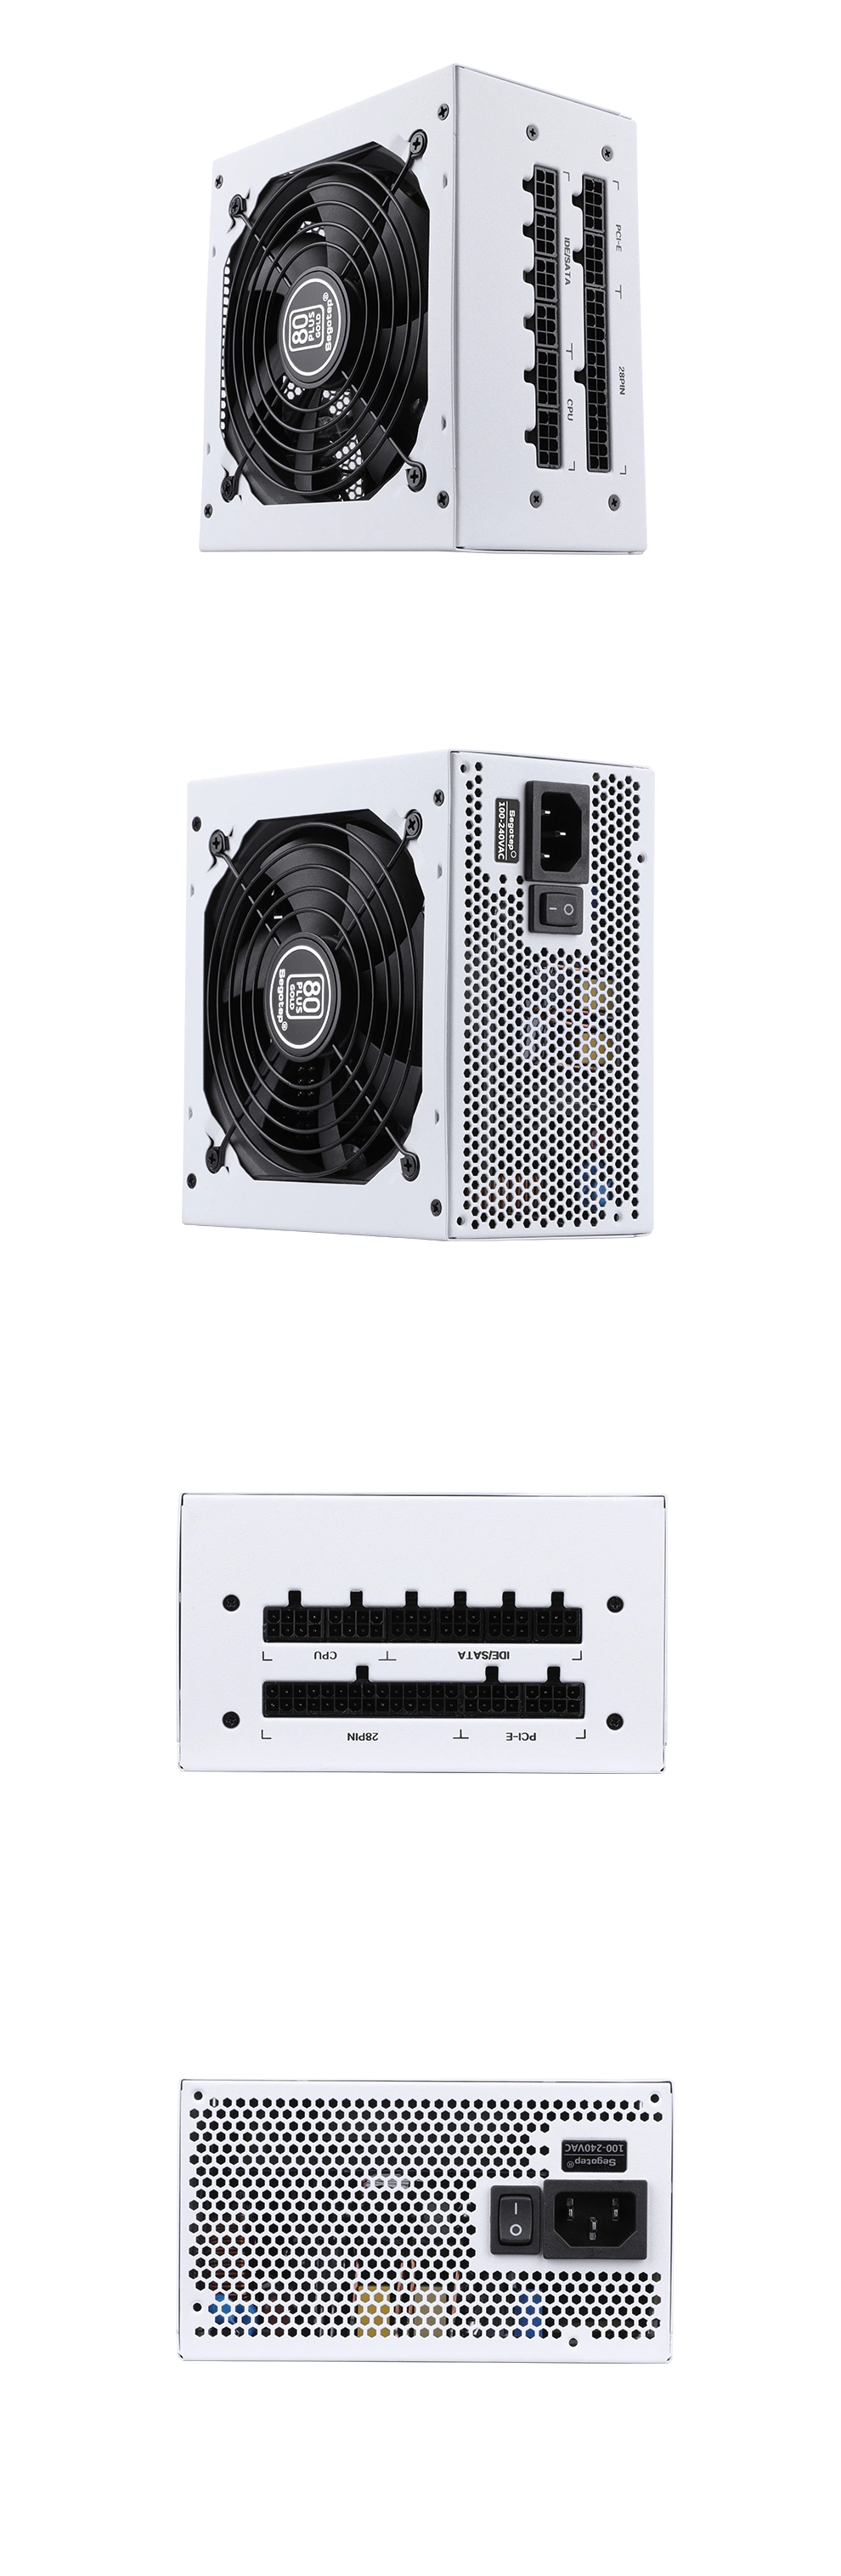 Segotep-4 PCS 6+2pin Pcie Port-2 CPU 4+4pin Port-80 Plus Gold-Gaming-ATX-Switching-Power Supply